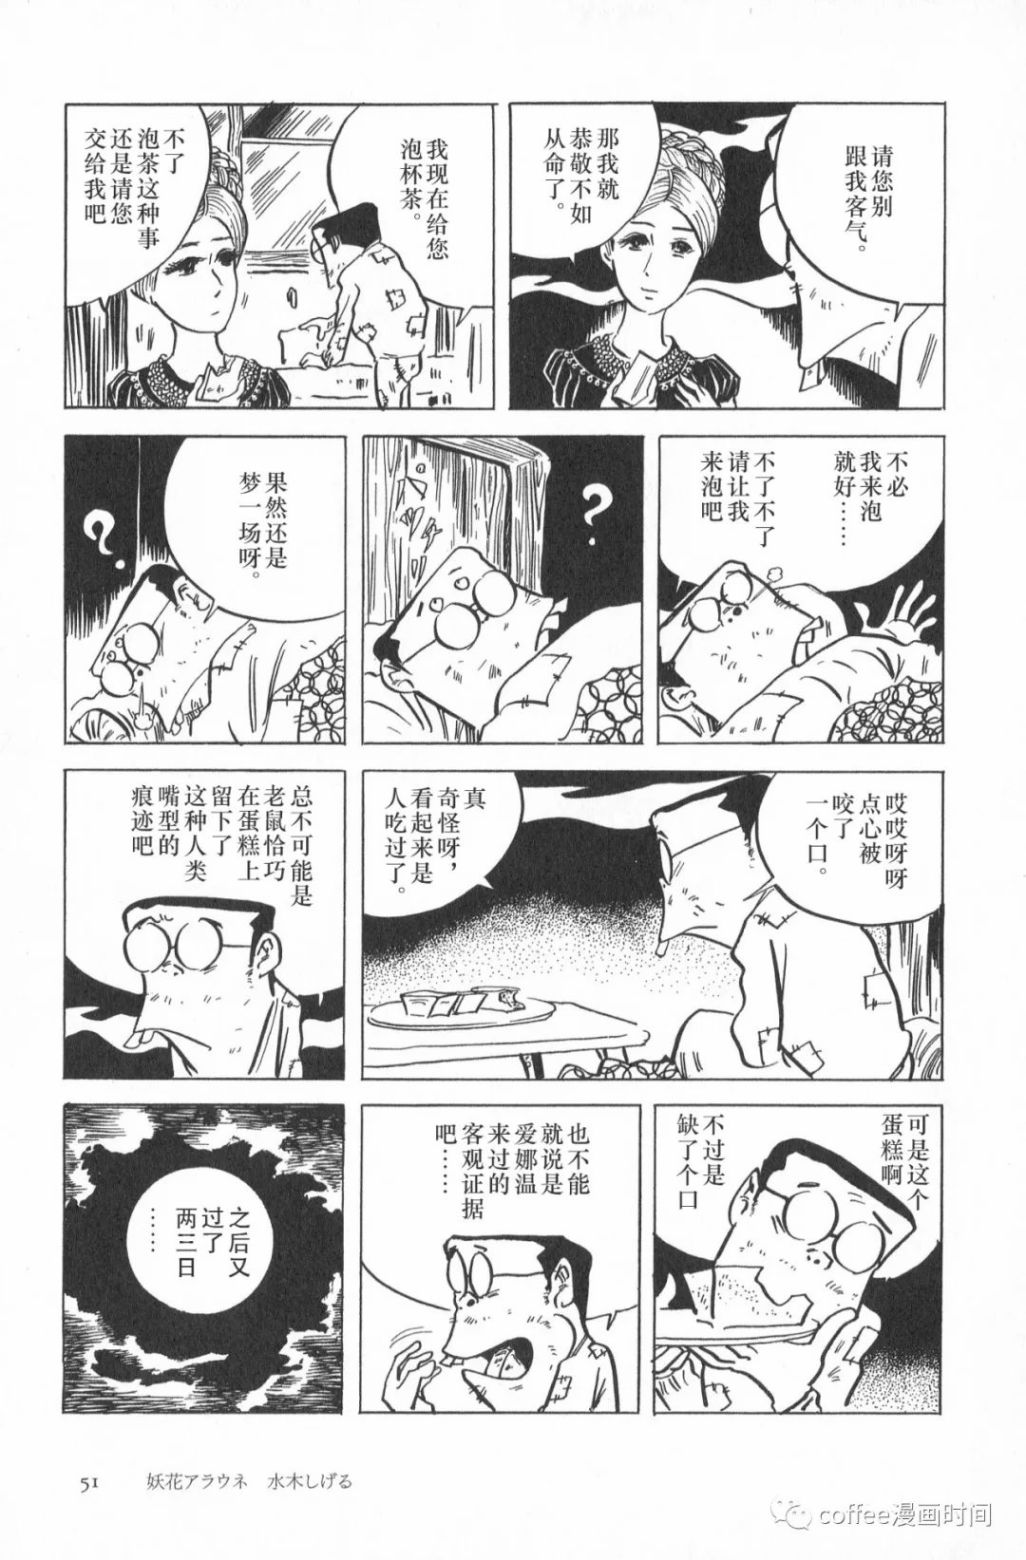 日本短篇漫畫傑作集 - 水木茂《妖花愛娜溫》 - 5